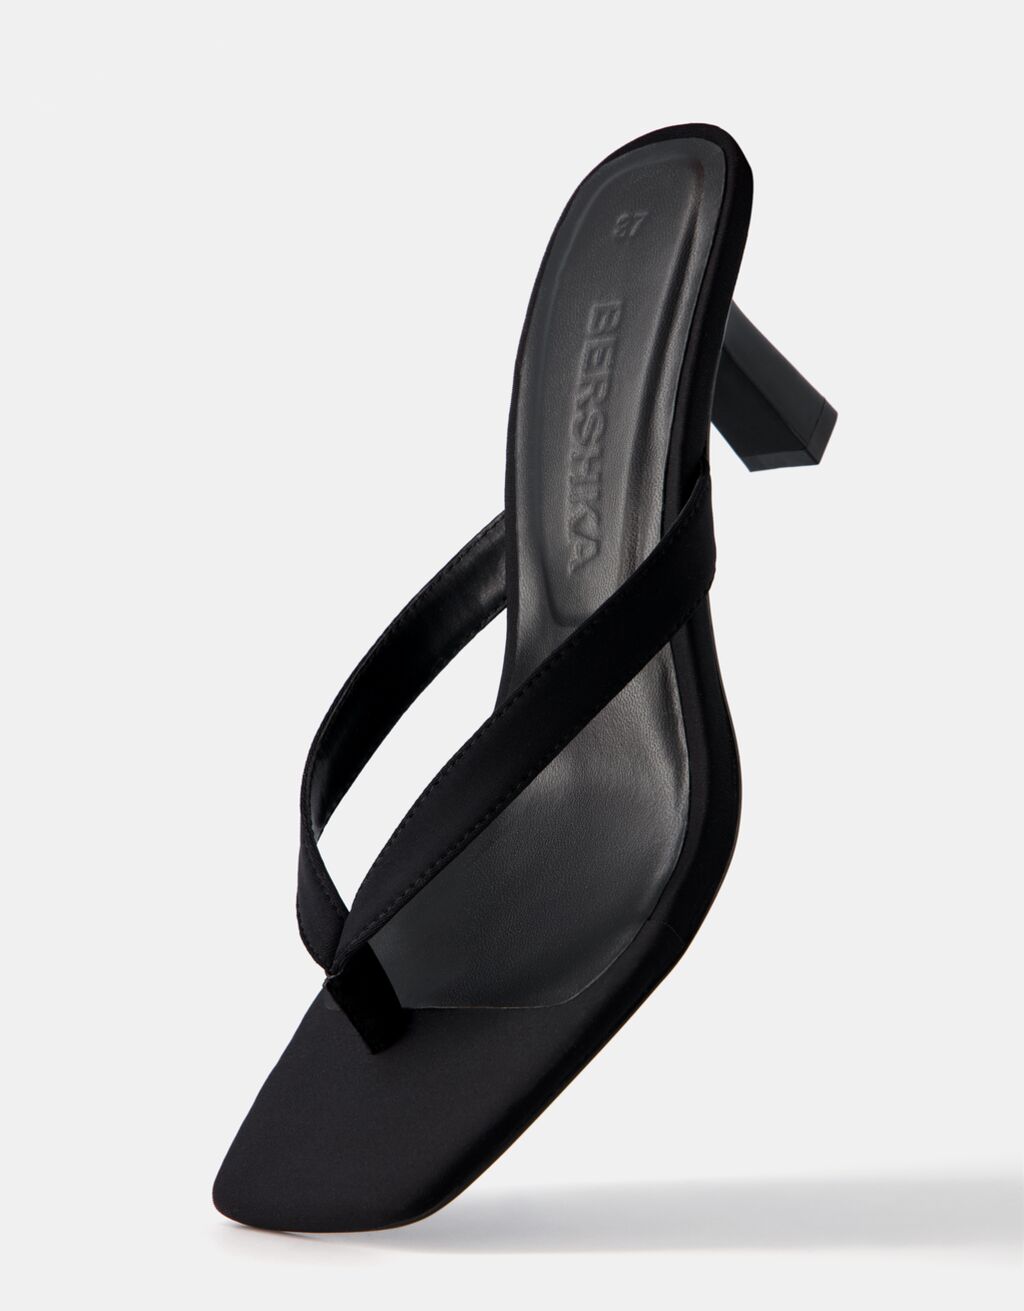 Women's Juliette Heeled Sandal in Black Size 9 by Fashion Nova | Heels, Sandals  heels, Black sandals heels